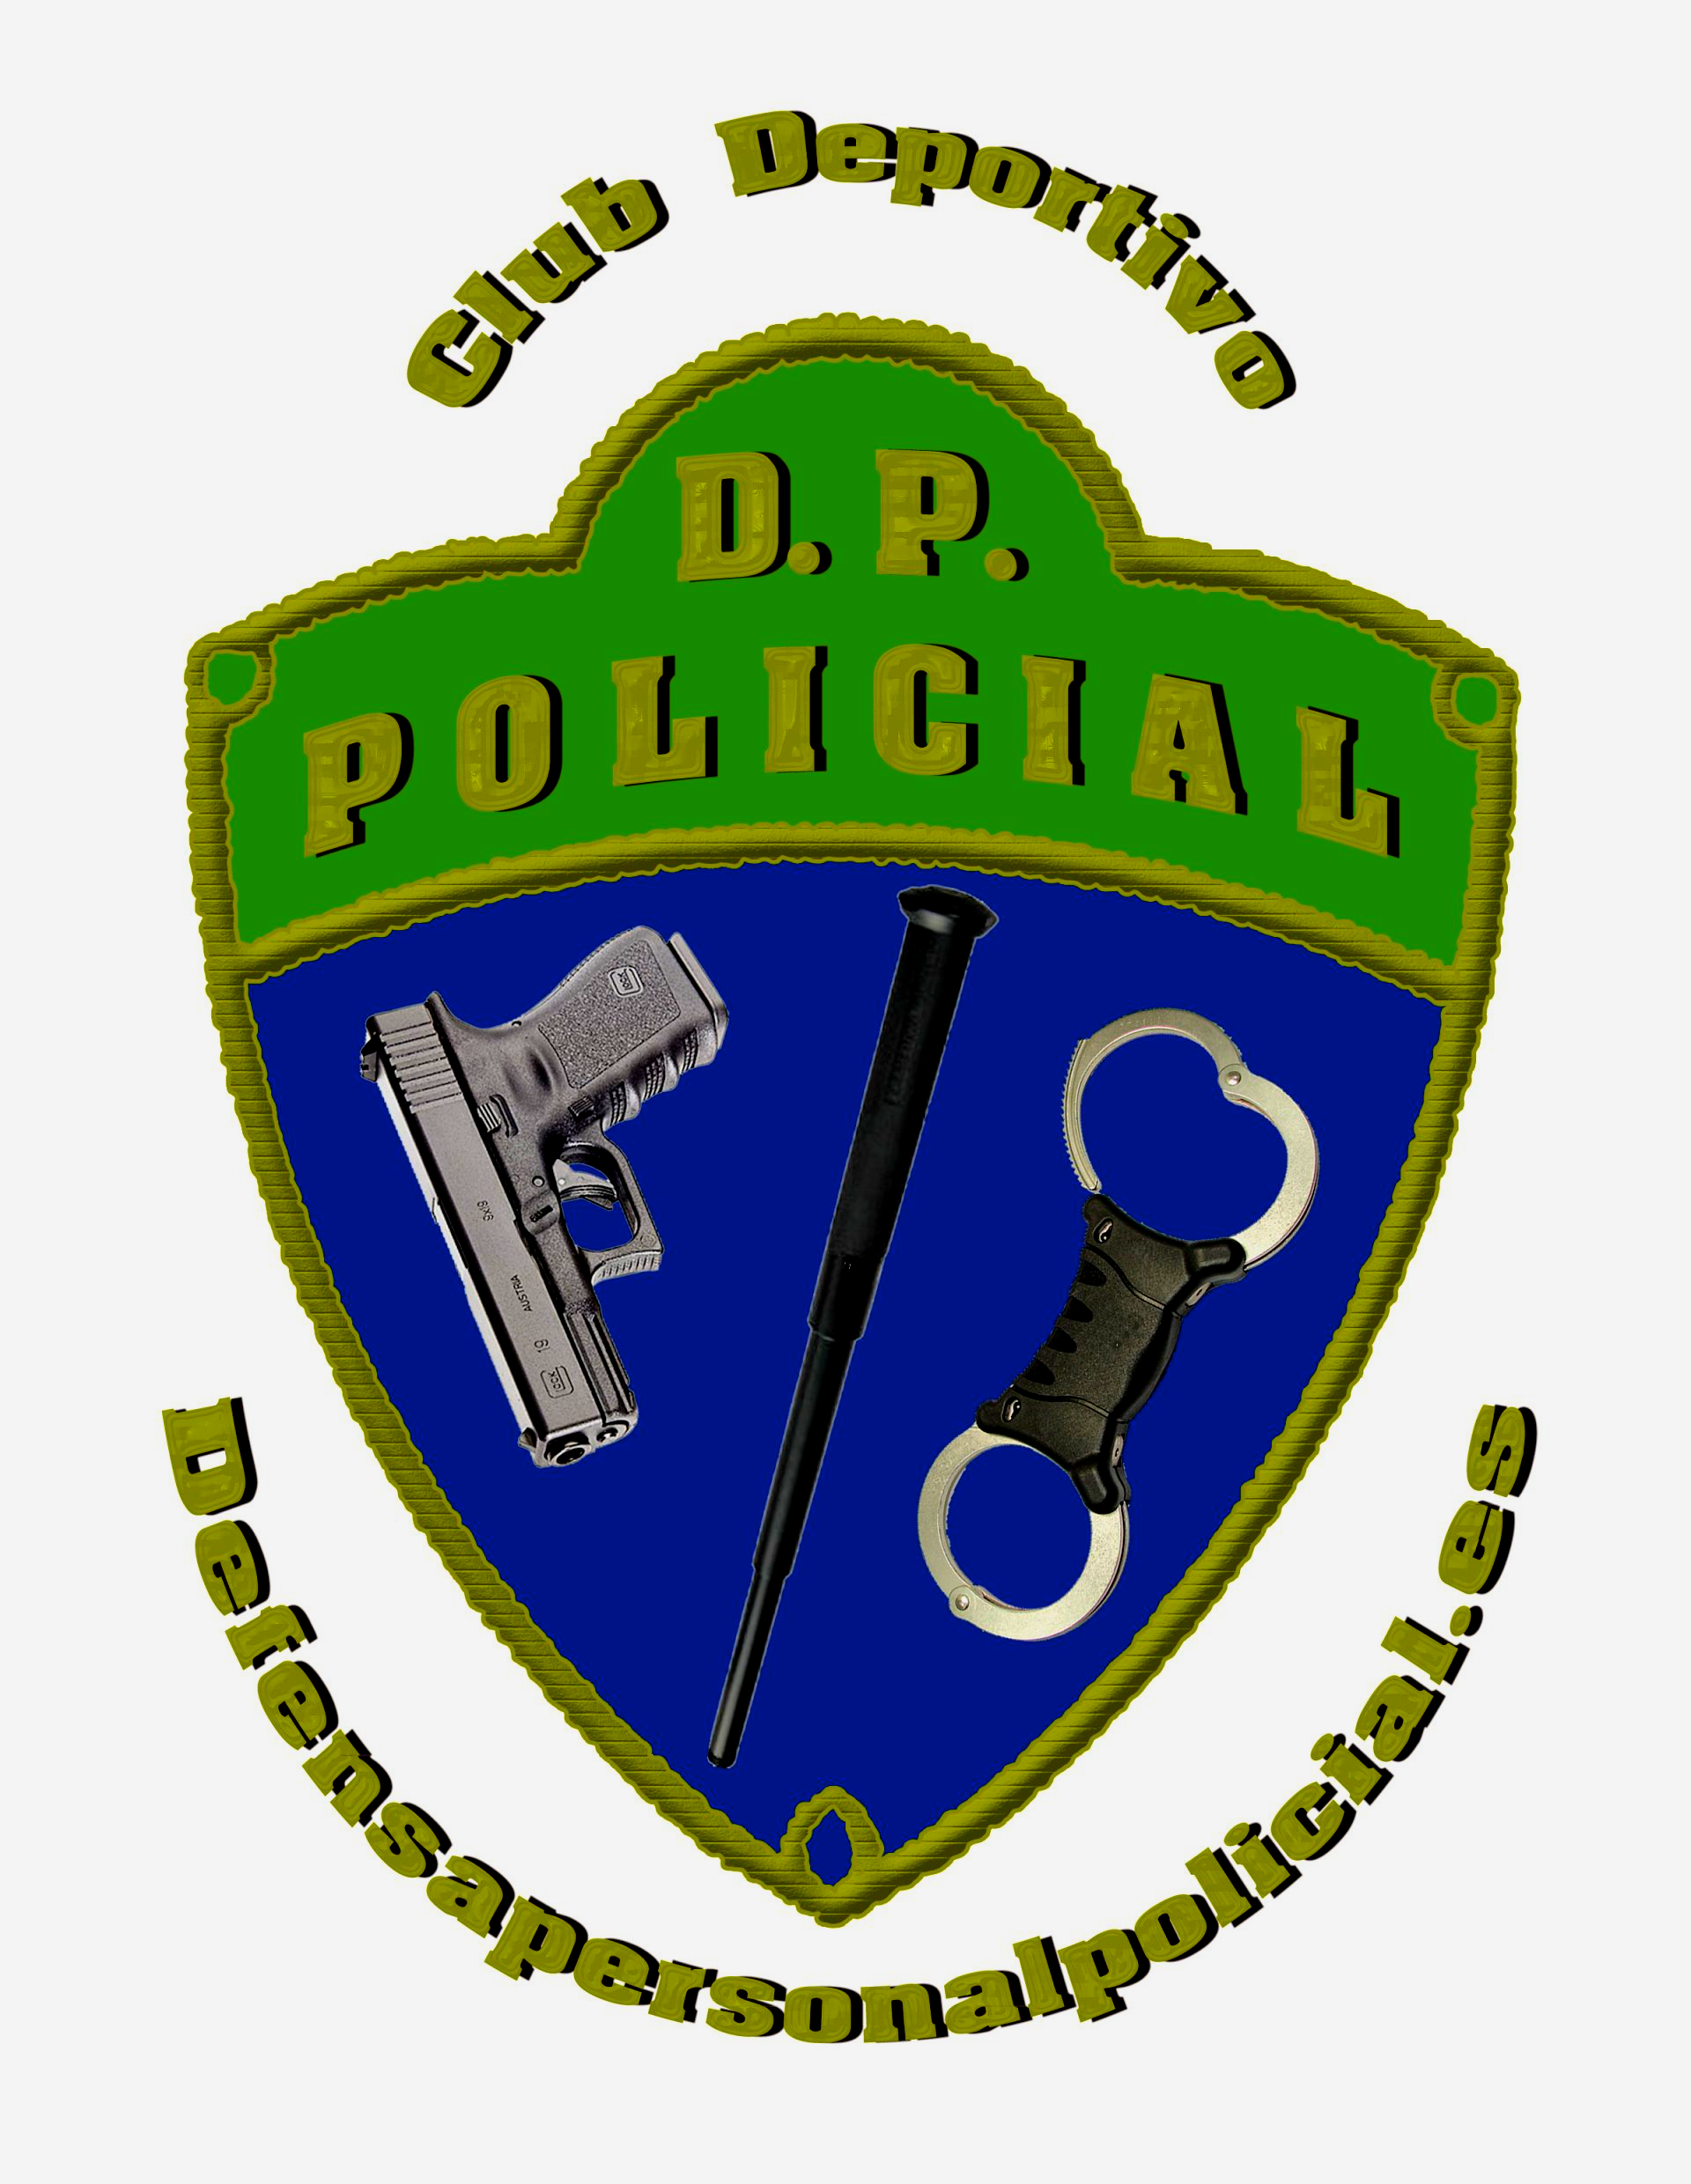 (c) Defensapersonalpolicial.es